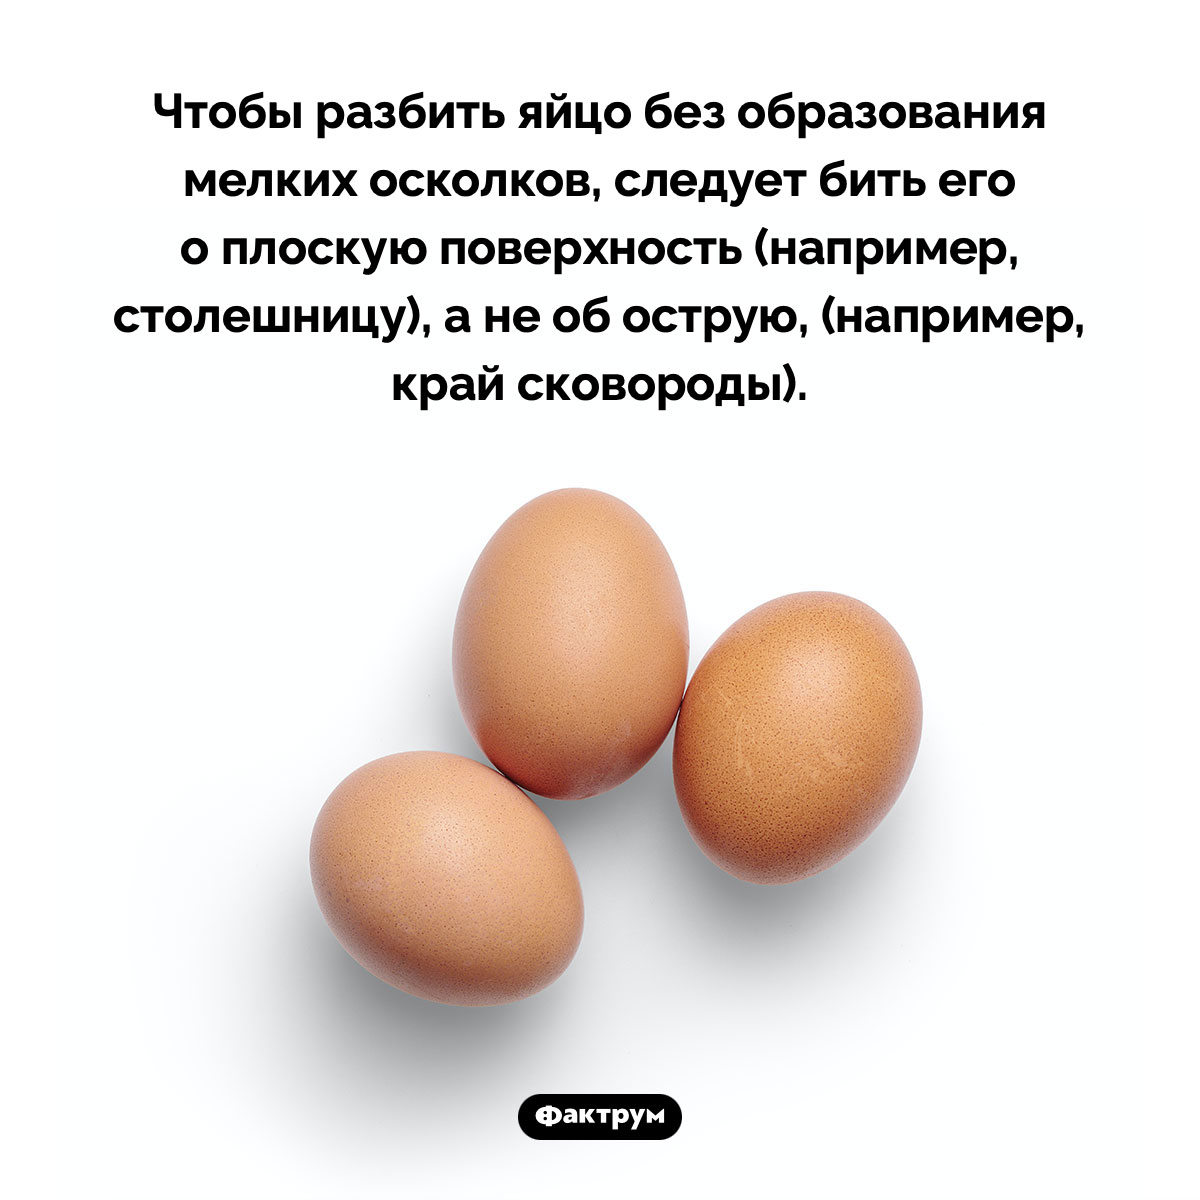 Как правильно разбить яйцо. Чтобы разбить яйцо без образования мелких осколков, следует бить его о плоскую поверхность (например, столешницу), а не об острую, (например, край сковороды).